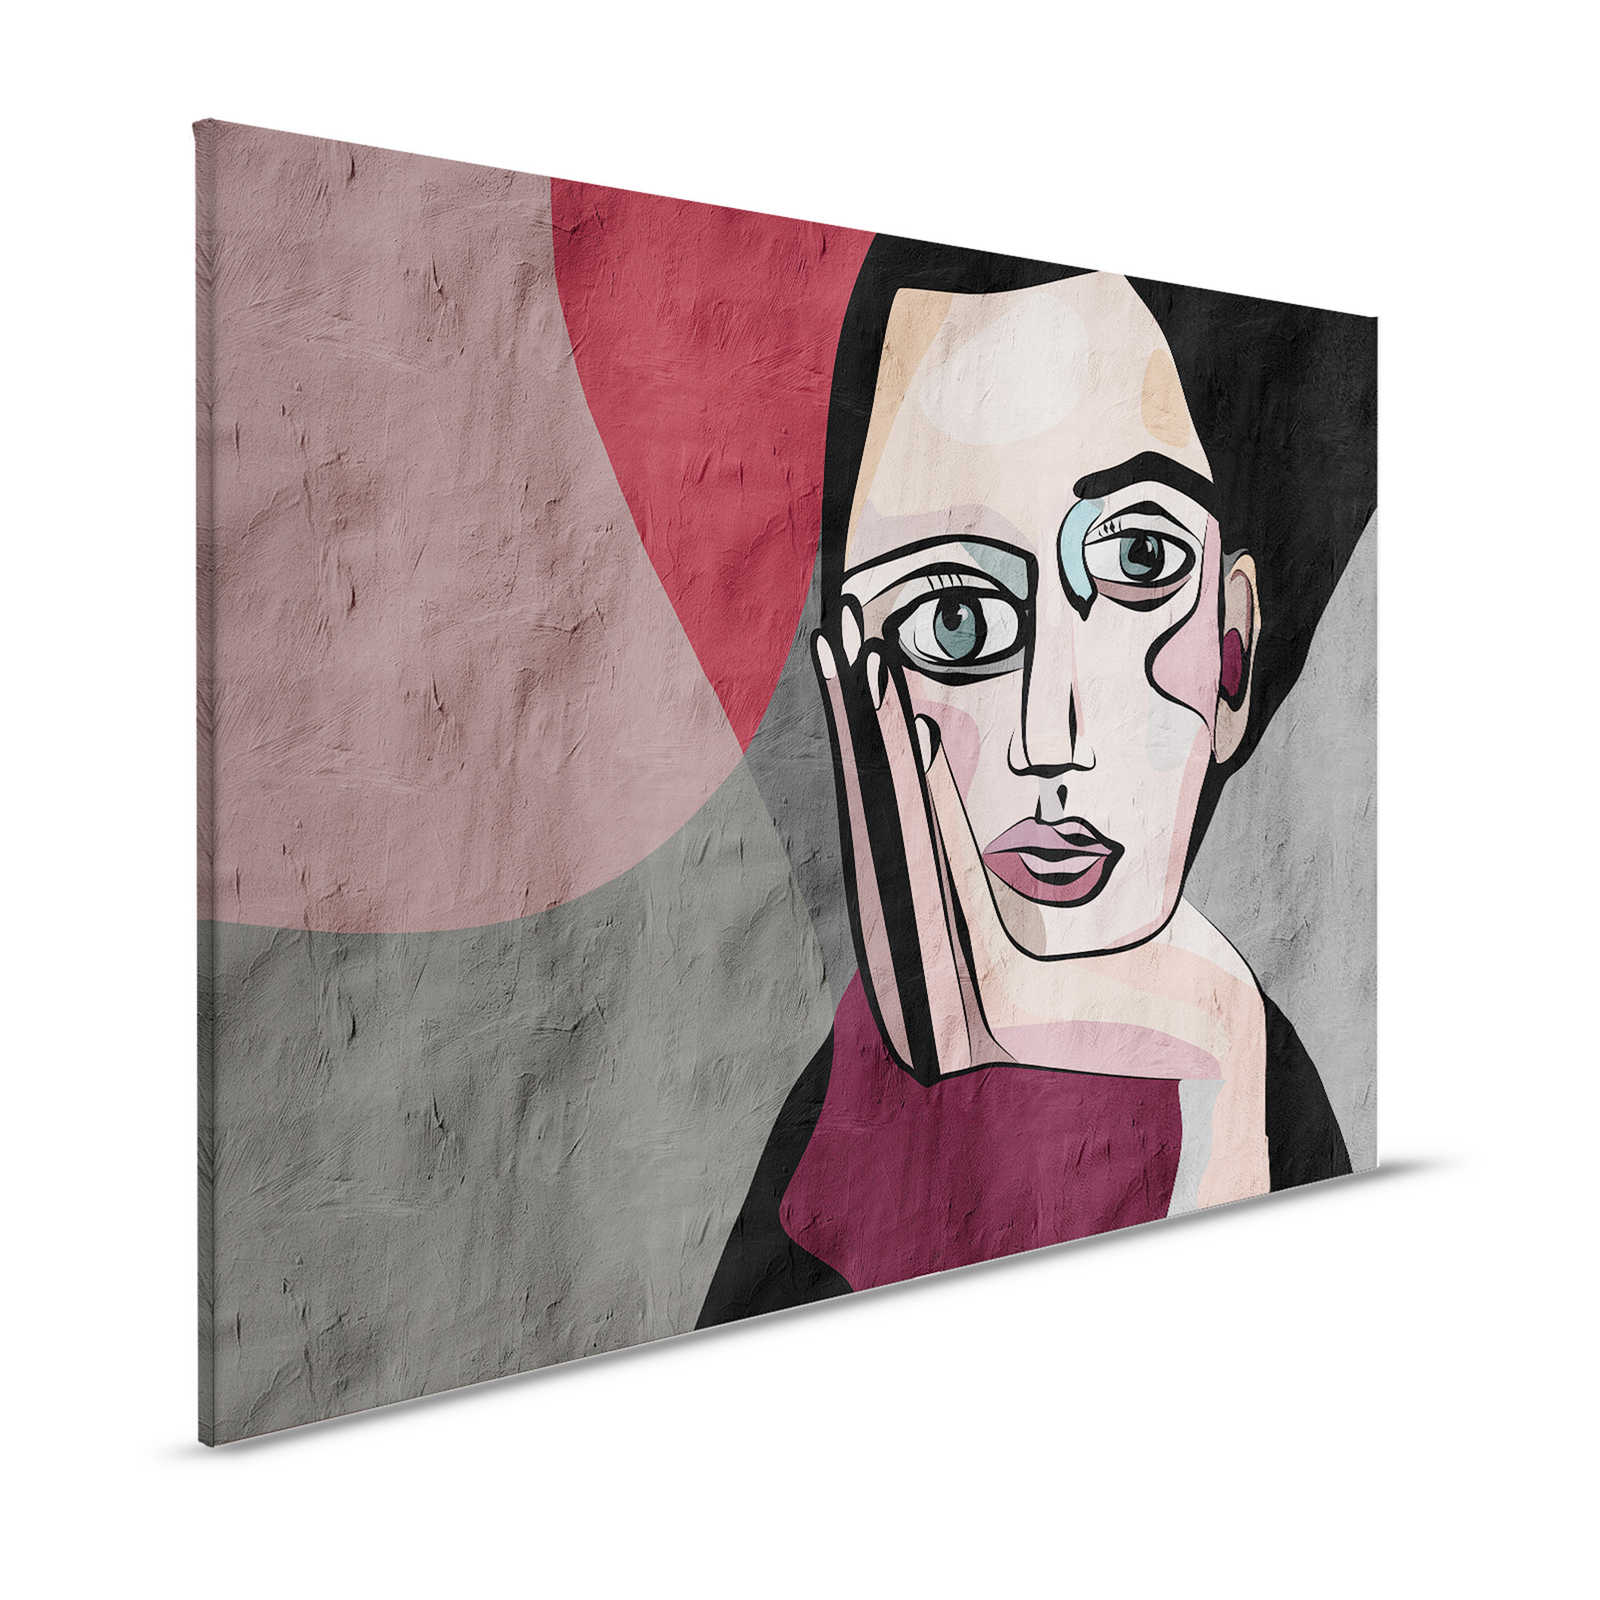 Think Tank 1 - Canvas schilderij abstracte graffiti vrouwen gezicht - 1,20 m x 0,80 m
